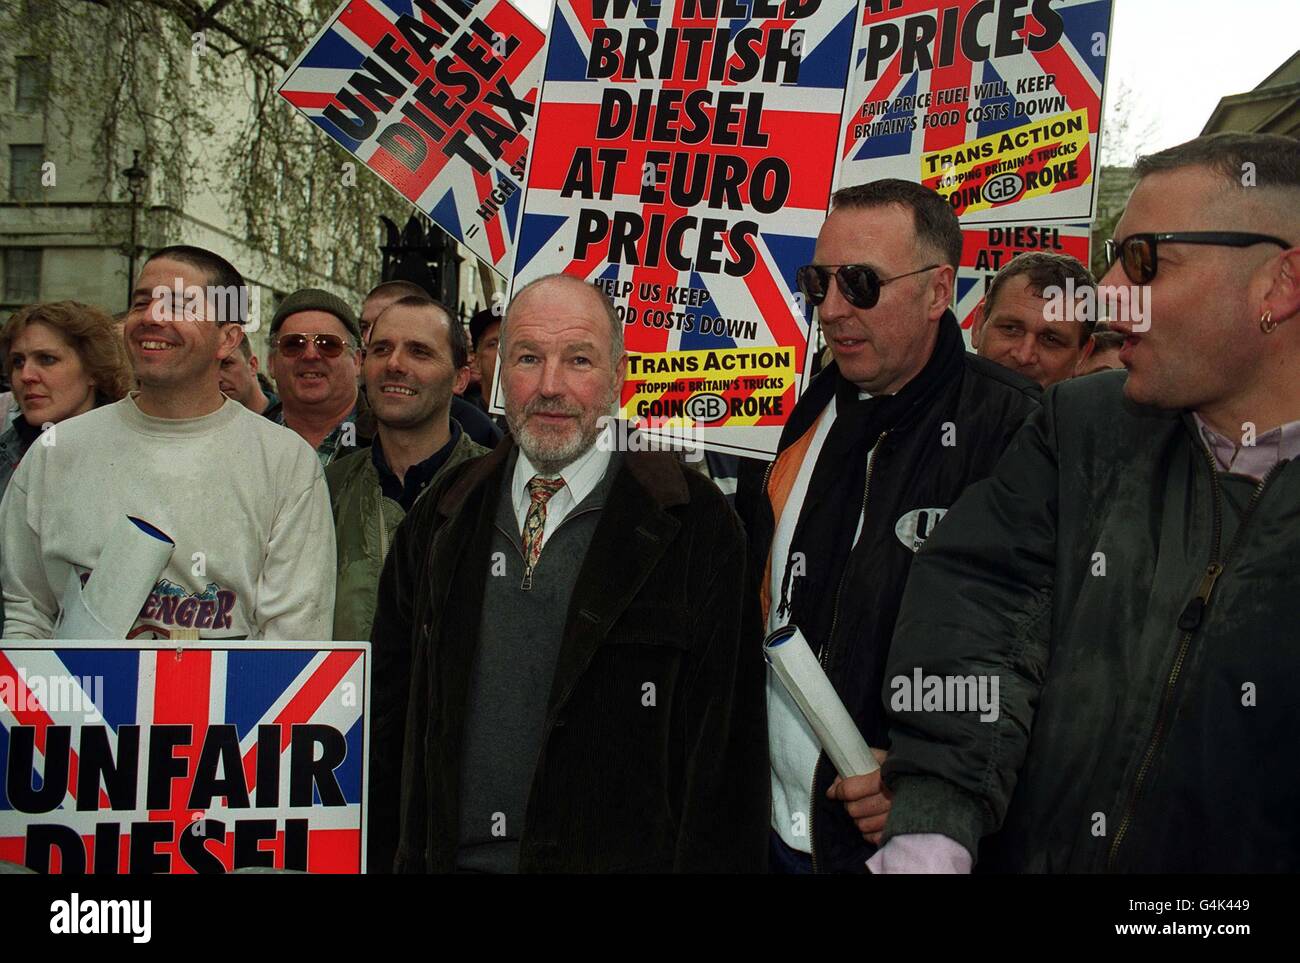 Representives of Trans-Action, durante le manifestazioni a Whitehall a Londra come parte della loro protesta sui prezzi del carburante diesel nel Regno Unito. Altre proteste erano in corso in altre grandi città del paese. Foto Stock